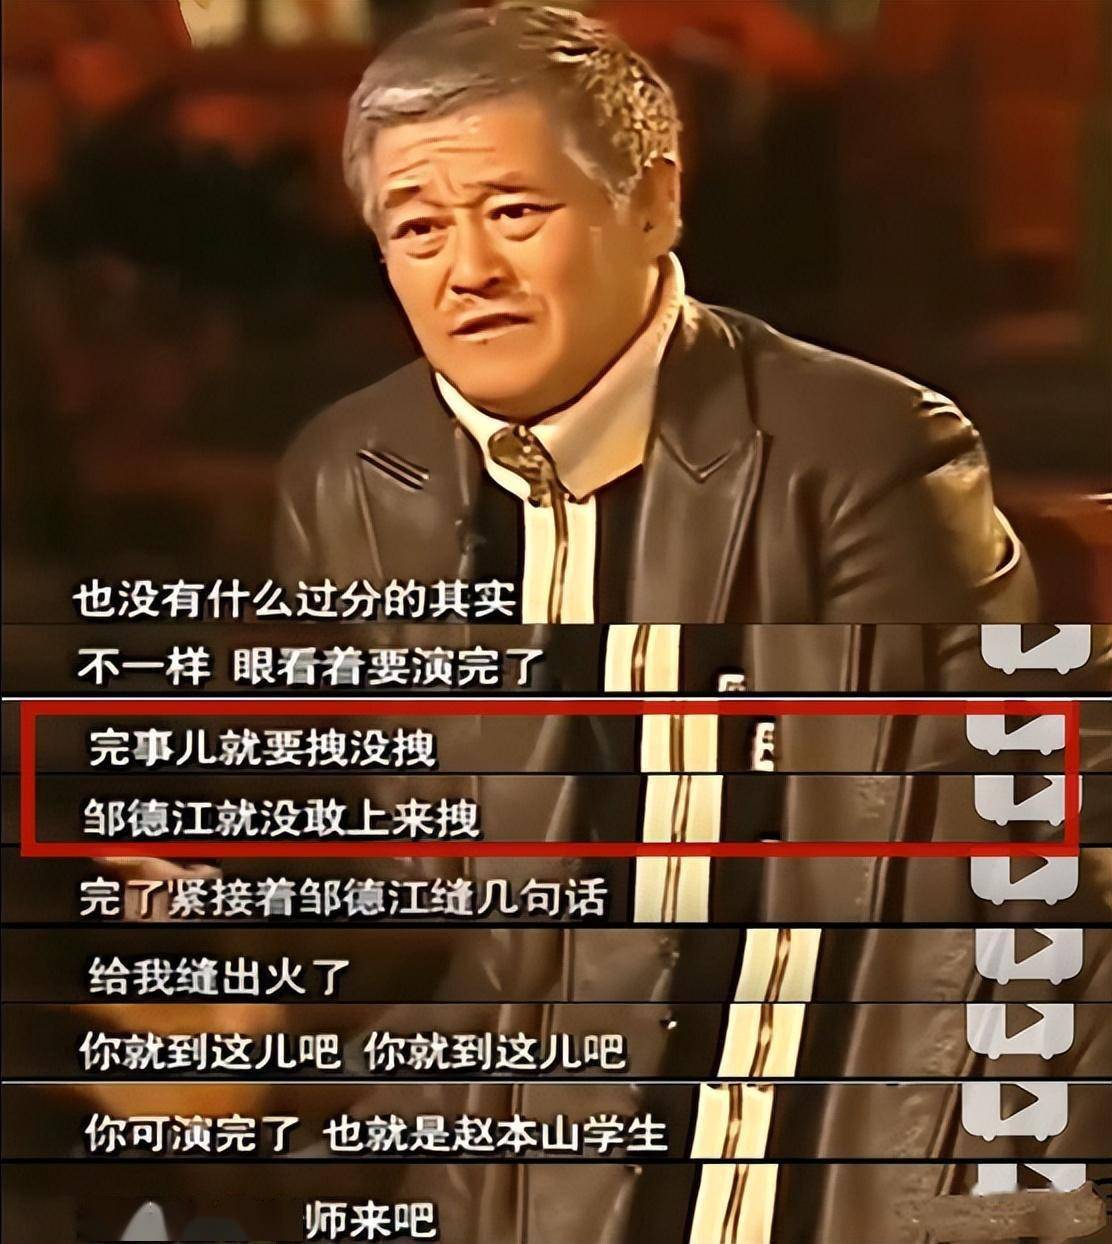 2004年,张小飞央视演出动作不雅被叫停,赵本山当场发飙表达不满